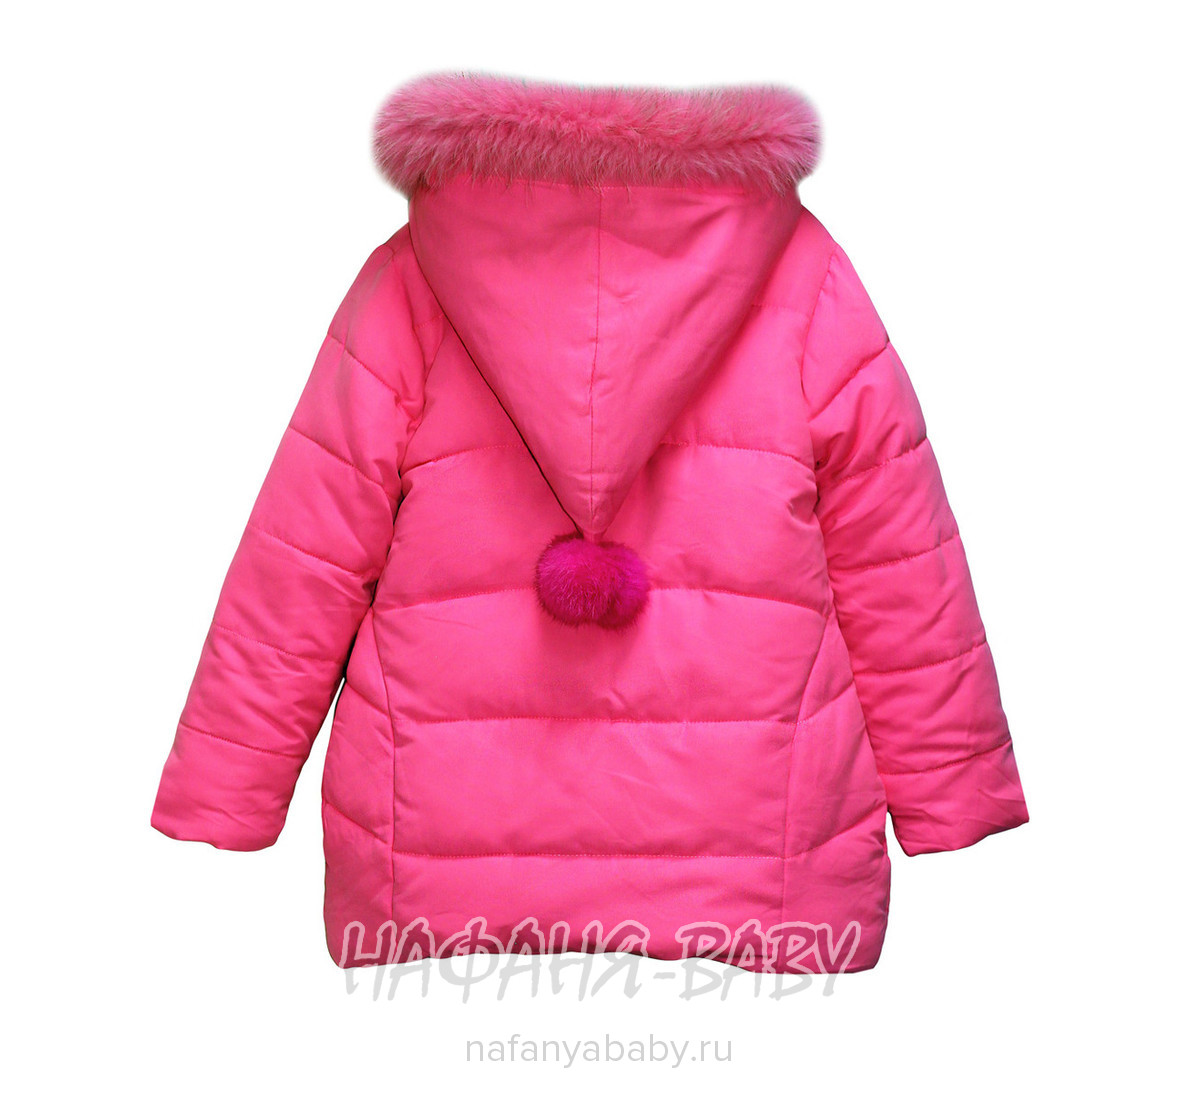 Детская зимняя куртка для девочки WIRX IZZY арт: 989, 5-9 лет, 1-4 года, цвет розовый, оптом Китай (Пекин)